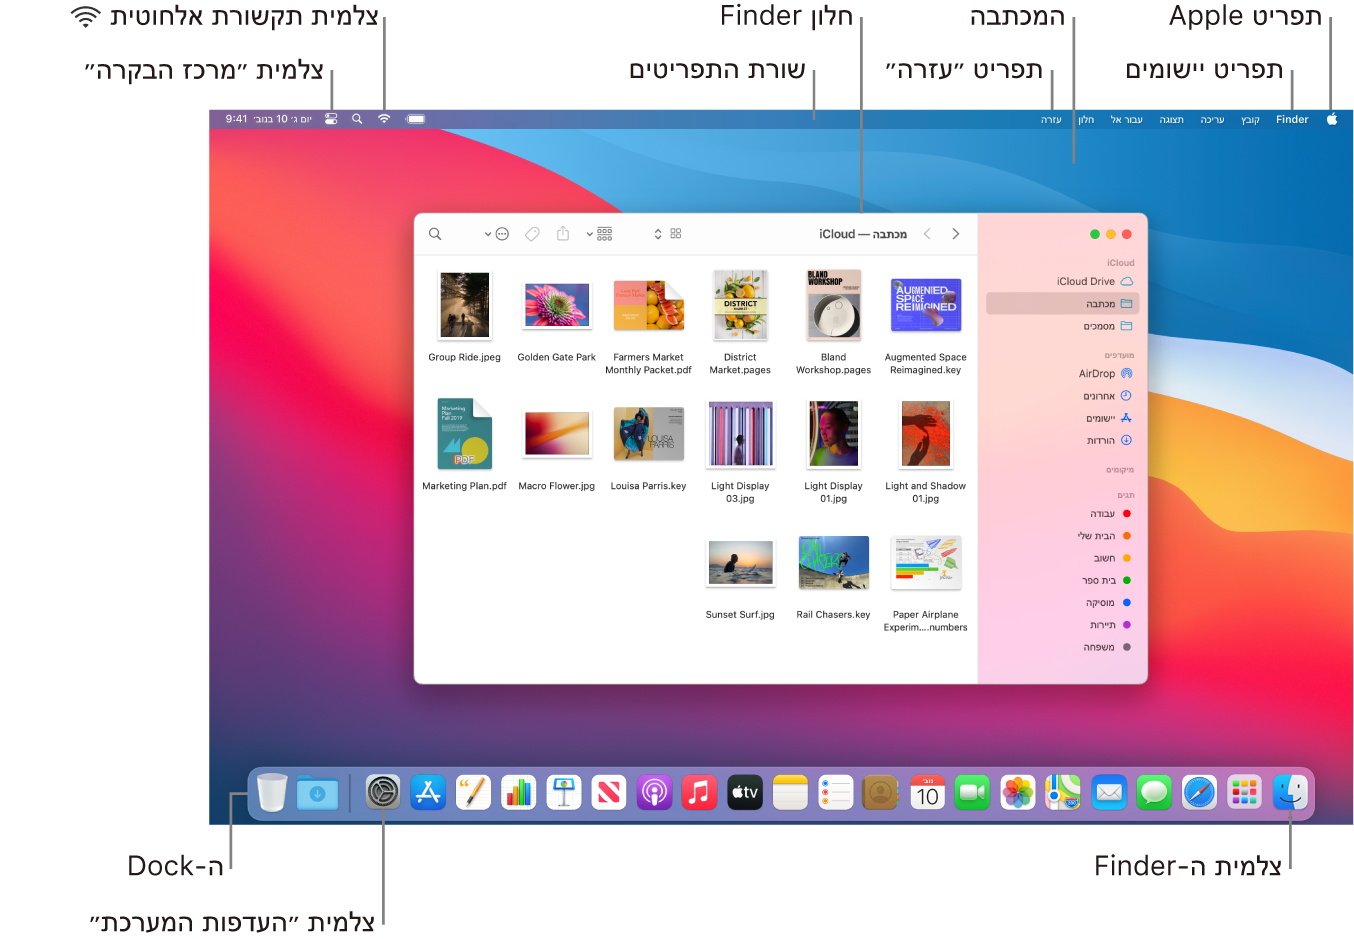 מסך Mac עם תפריט Apple, תפריט היישומים, המכתבה, תפריט ״עזרה״, חלון של ה‑Finder, שורת התפריטים, צלמית הרשת האלחוטית, צלמית ״מרכז הבקרה״, צלמית ה-Finder, צלמית ״העדפות המערכת״ וה‑Dock.